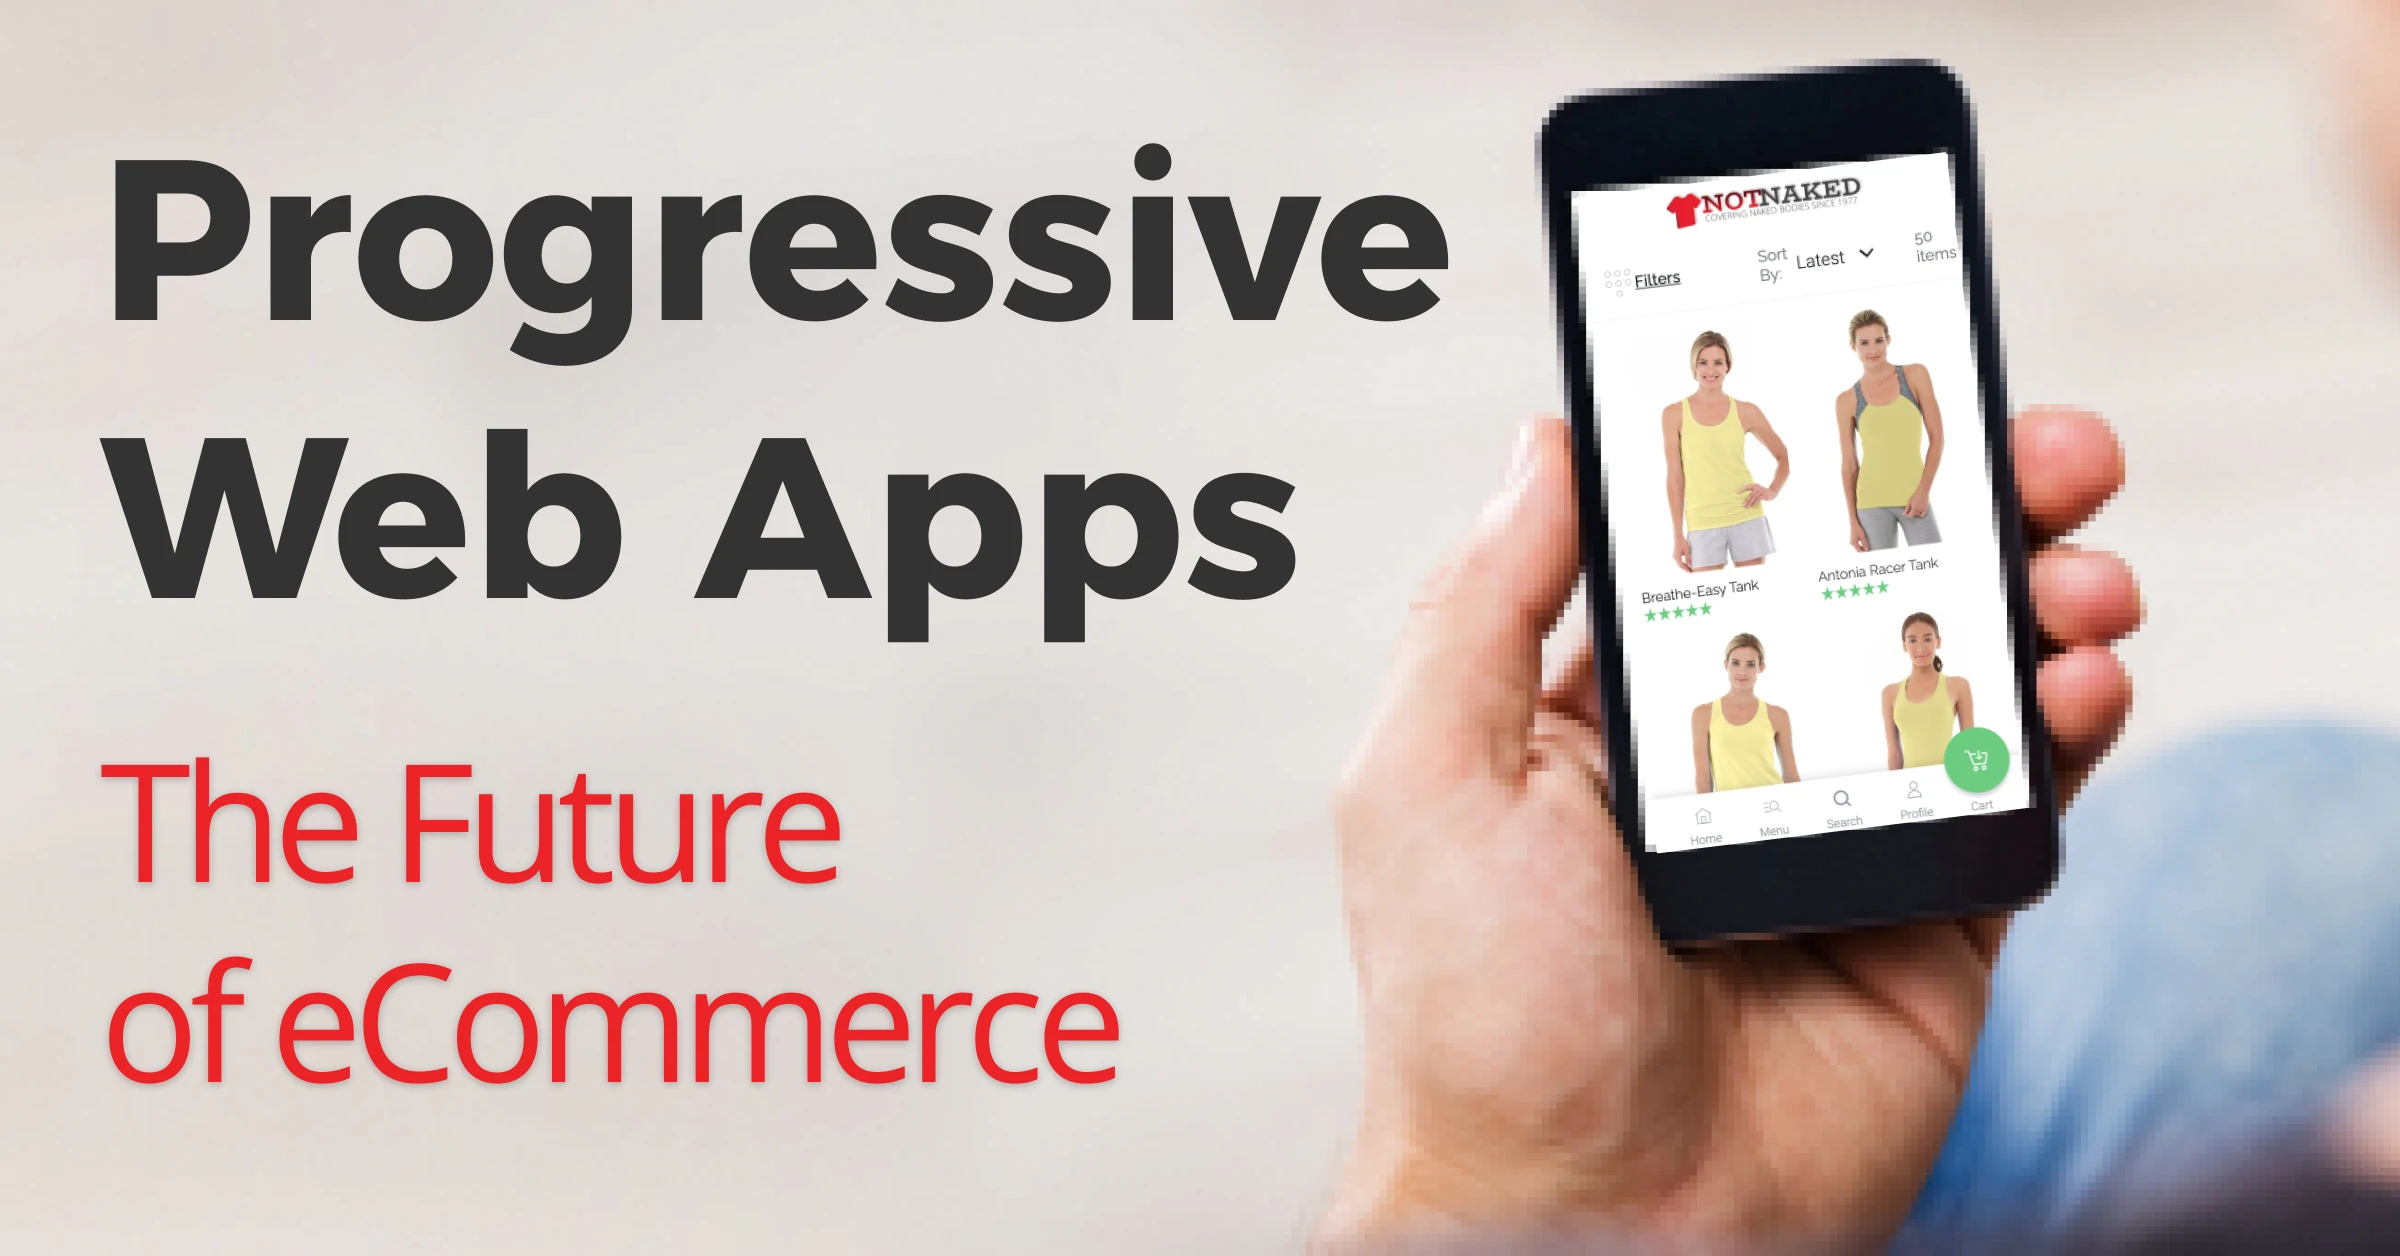 Progressive Web Apps: The Future of eCommerce